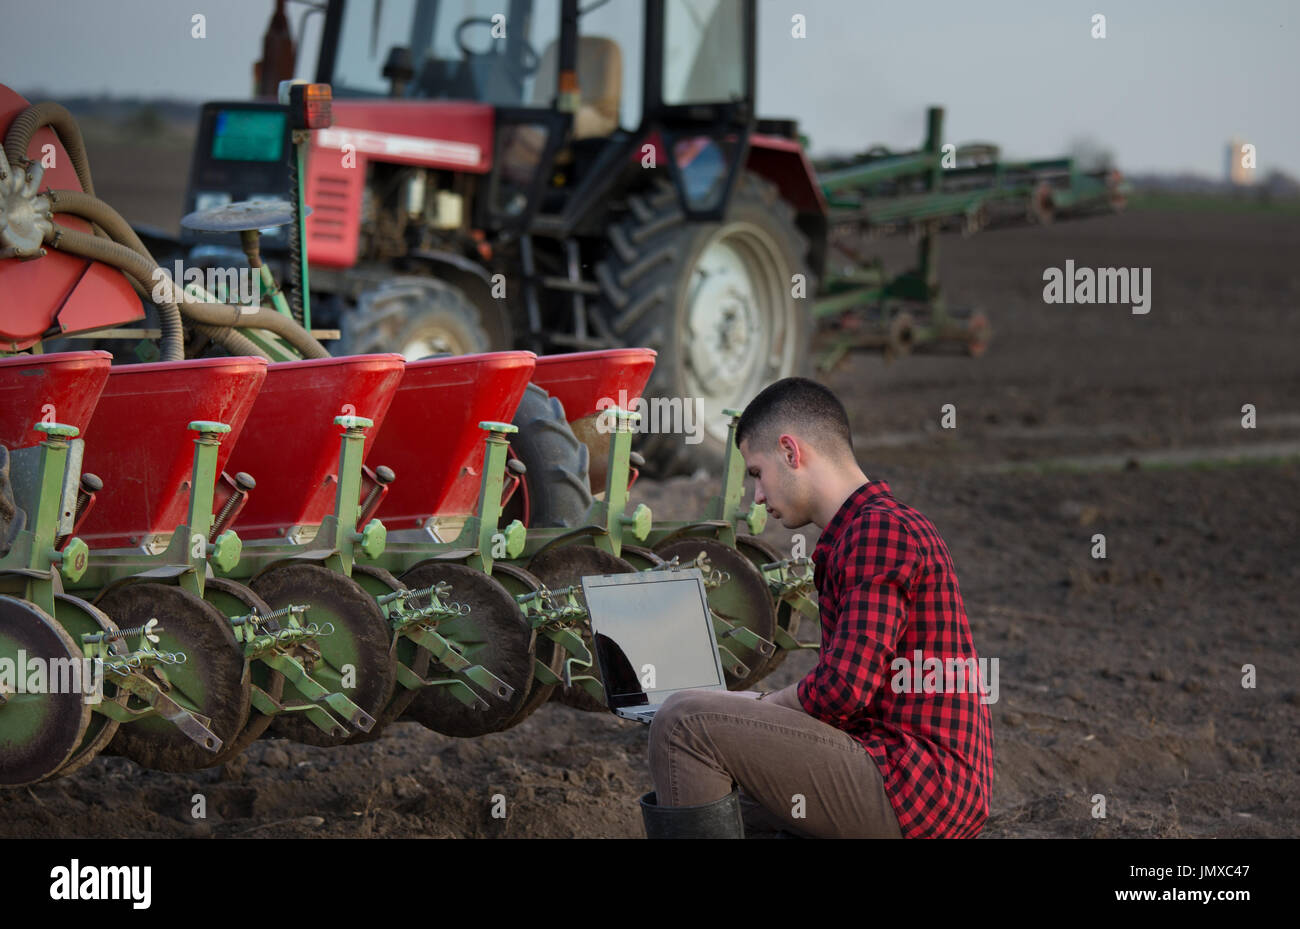 Jeune agriculteur avec coffre accroupis dans champ dans l'avant du tracteur avec matériel d'ensemencement. La technologie à puce dans l'agriculture Banque D'Images